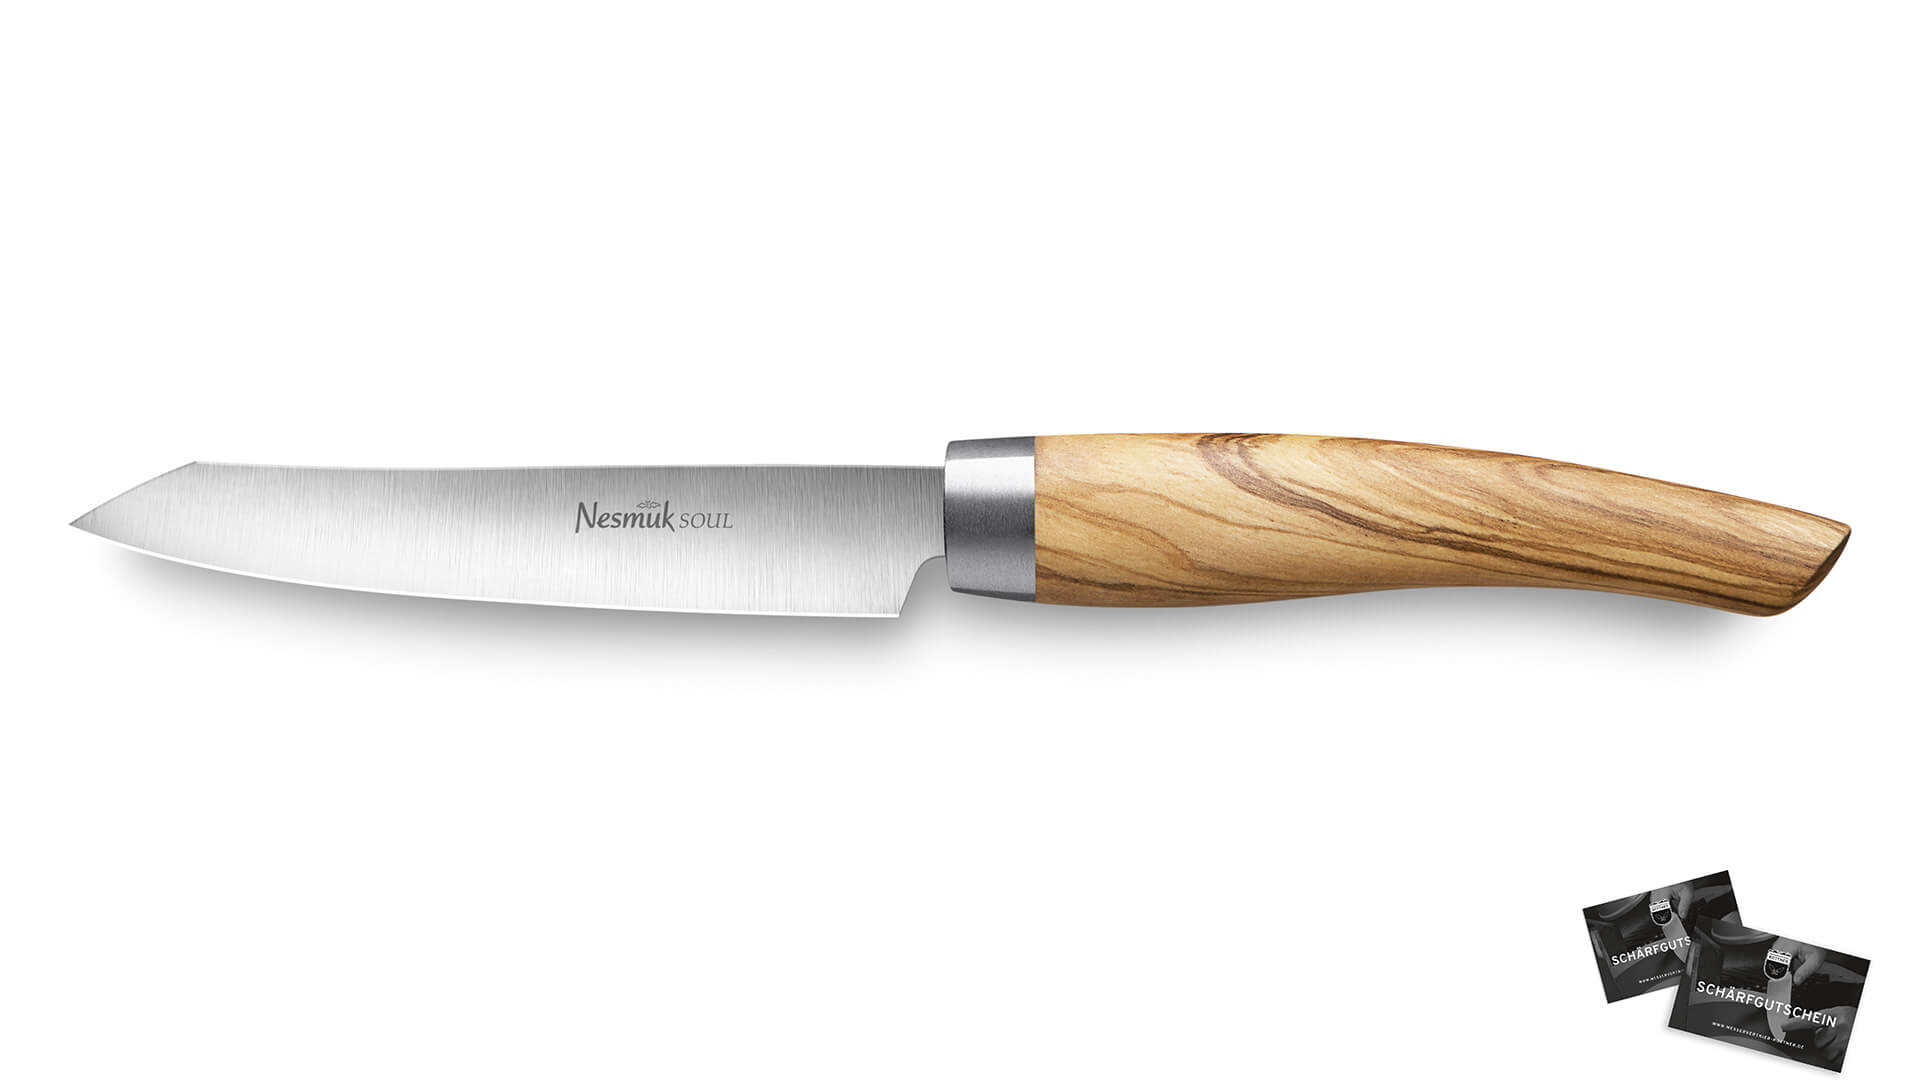 nesmuk-soul-office-knife-olive-wood-vegetable-knife-paring-knife-knife-solingen-buy-online-shop